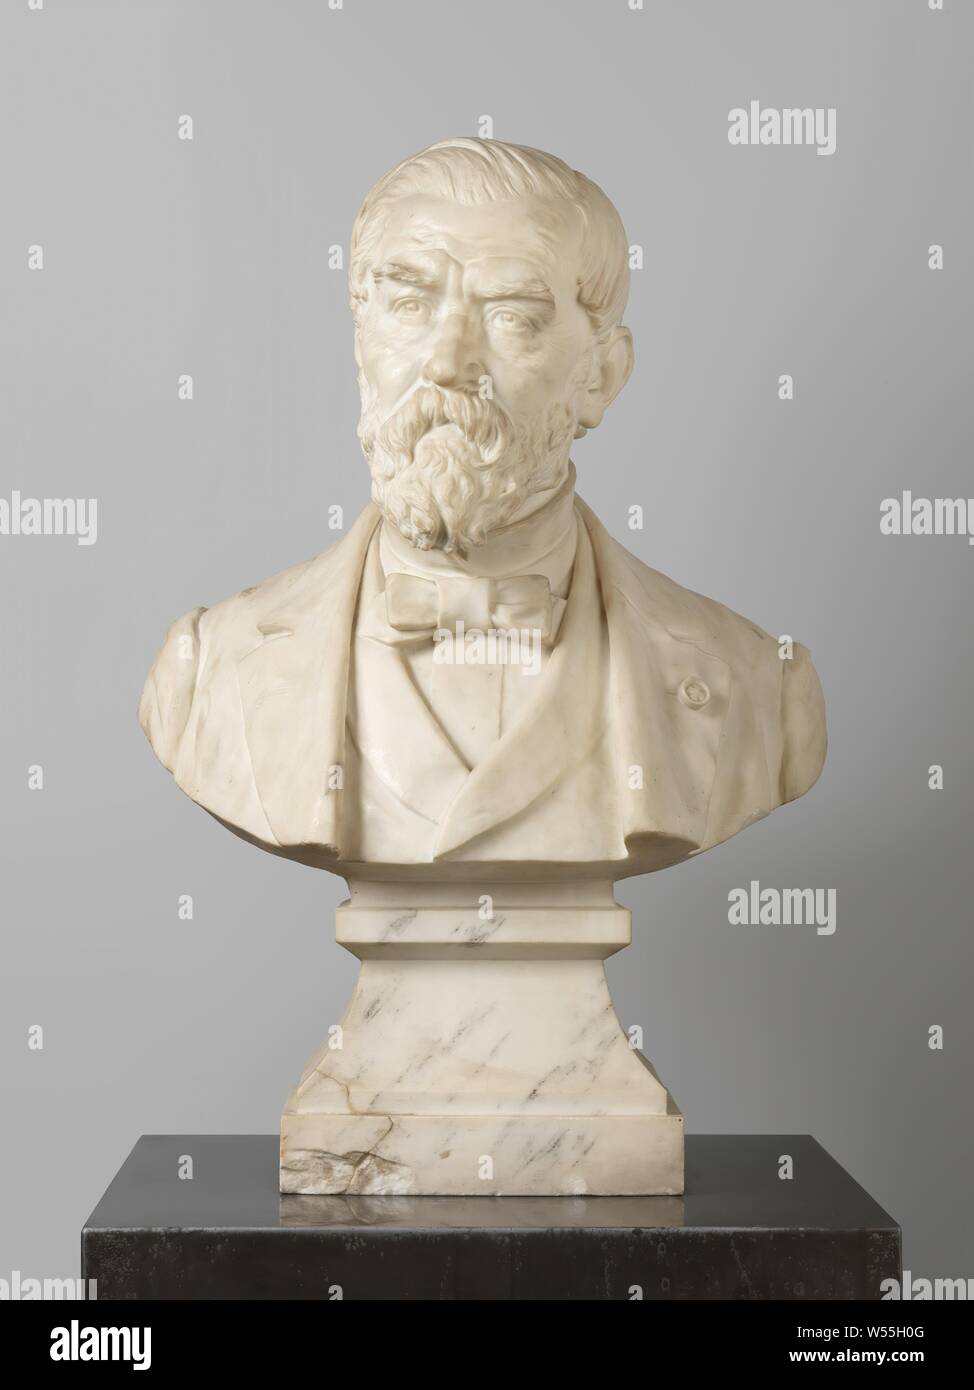 Buste par Willem Hofdijk (1816-1888), écrivain, Life-size portrait de marbre blanc., Willem Jacobs Hofdijk, Bart van Hove, Pays-Bas), ch. 1886, le marbre (rock), H 71 cm × 48 cm × w d 25 cm × w 62 kg Banque D'Images